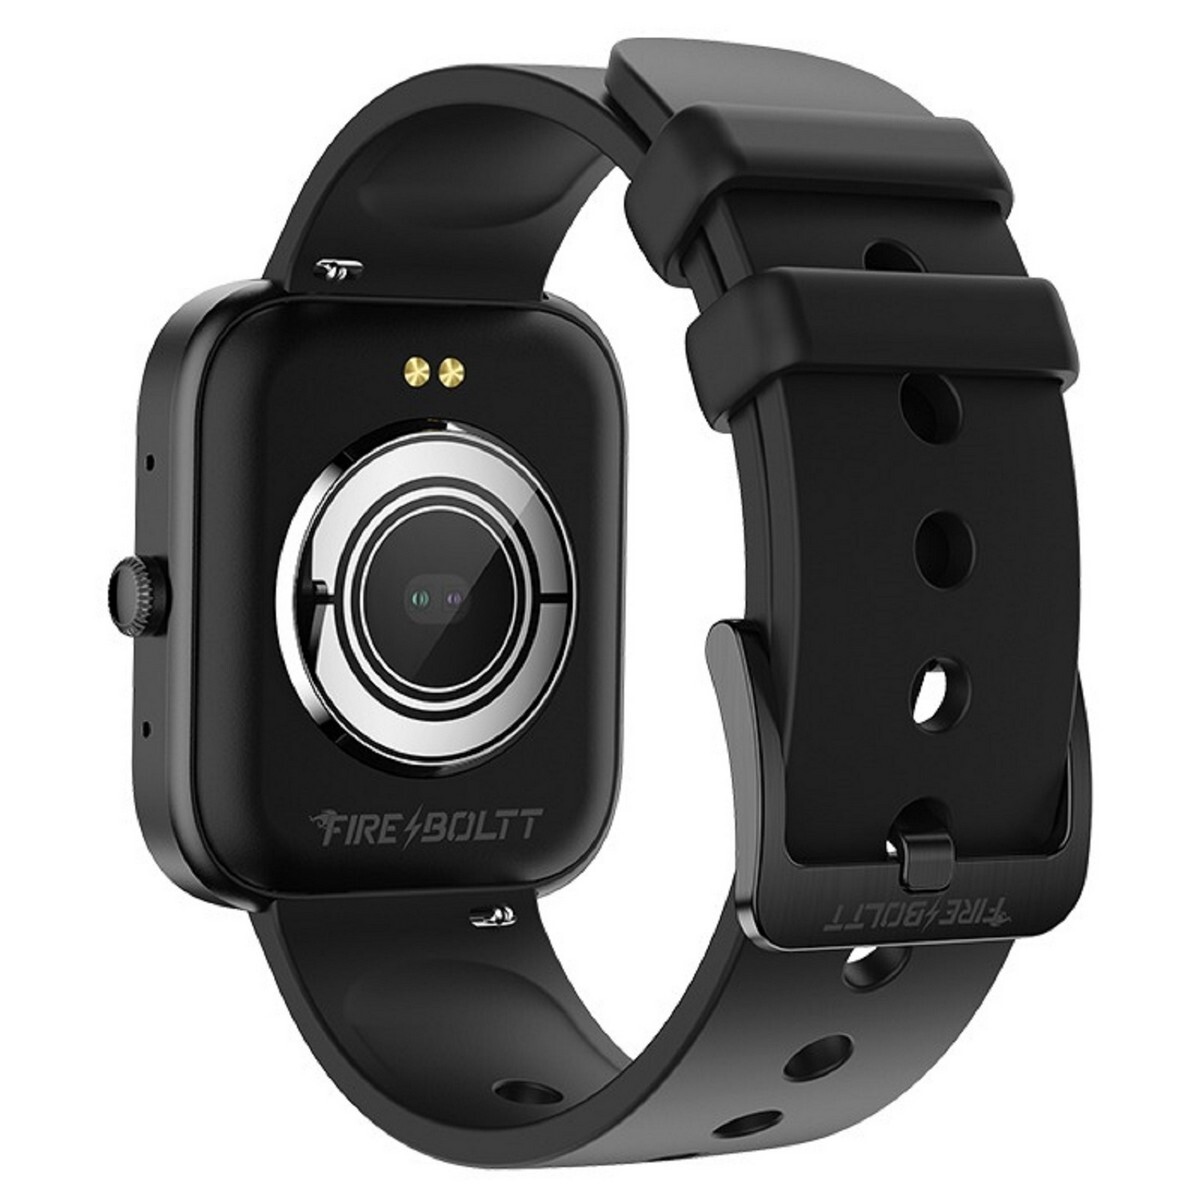 FireBoltt Smart Watch Jaguar BSW068 Black